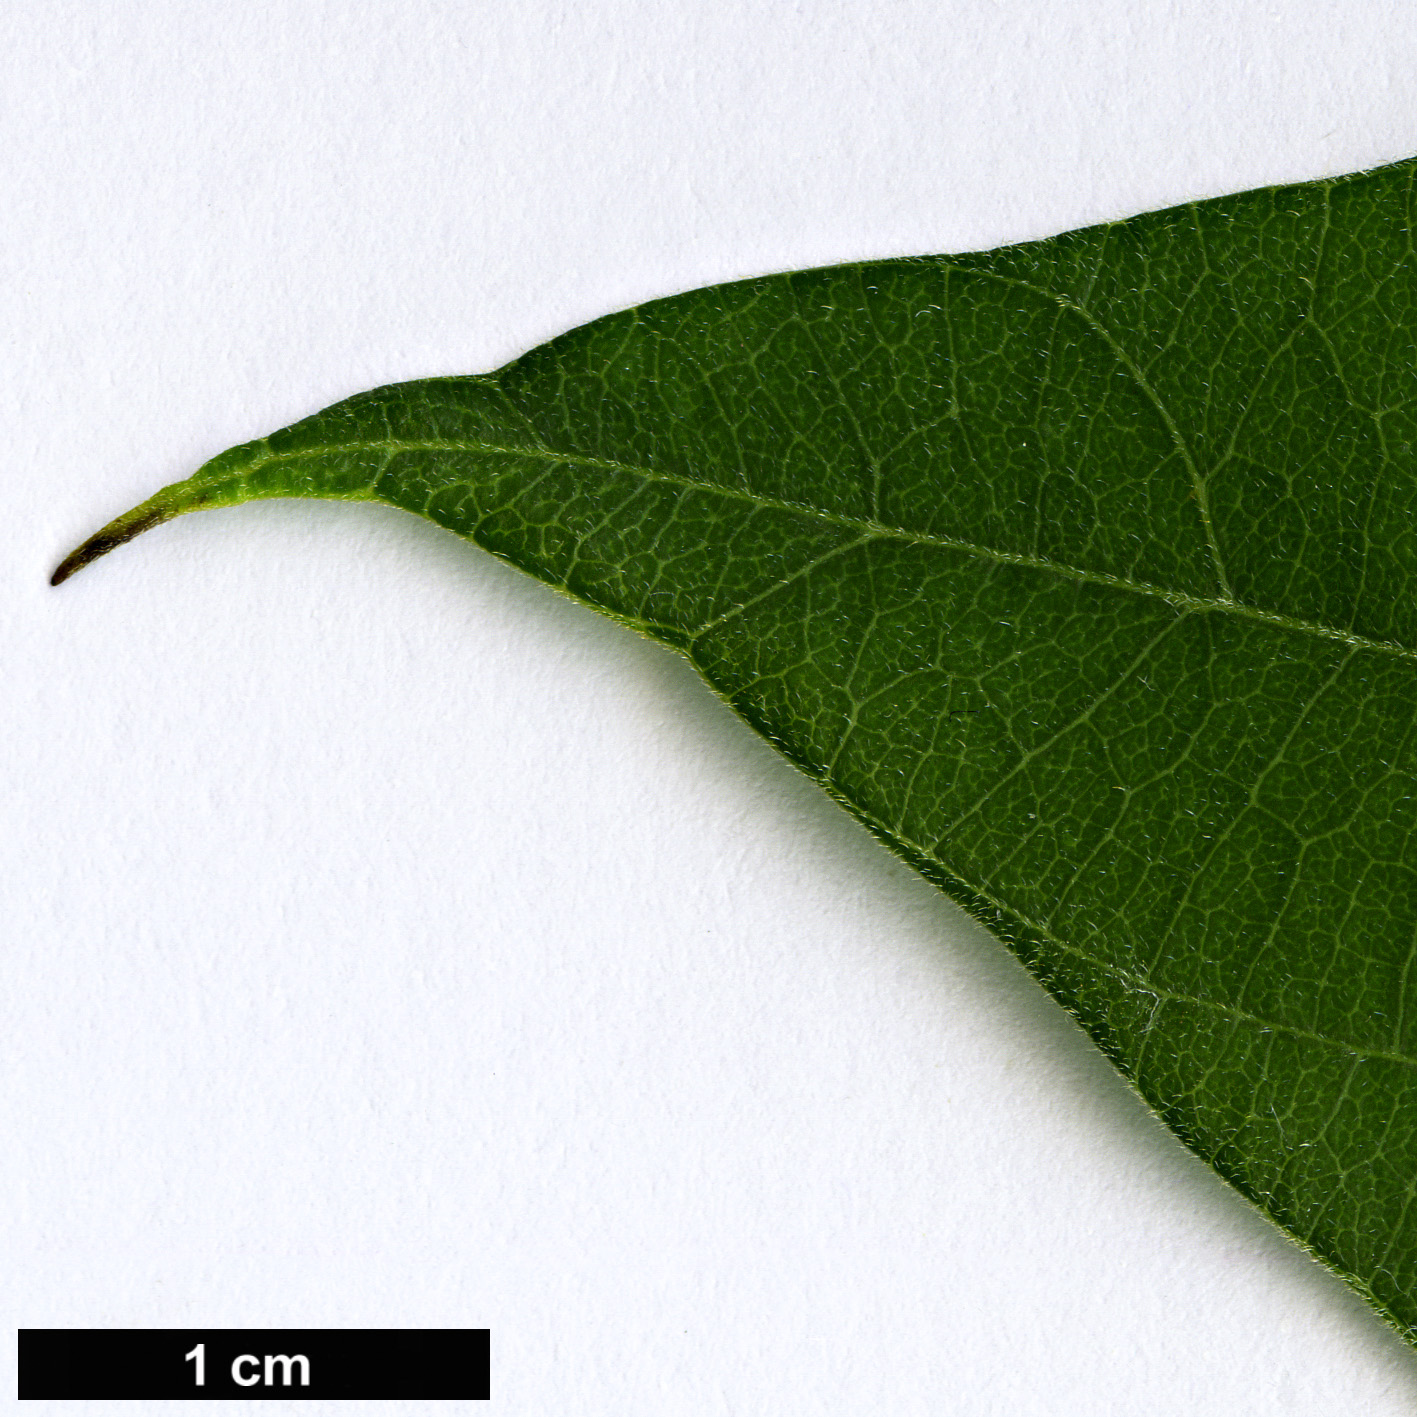 High resolution image: Family: Menispermaceae - Genus: Sinomenium - Taxon: acutum